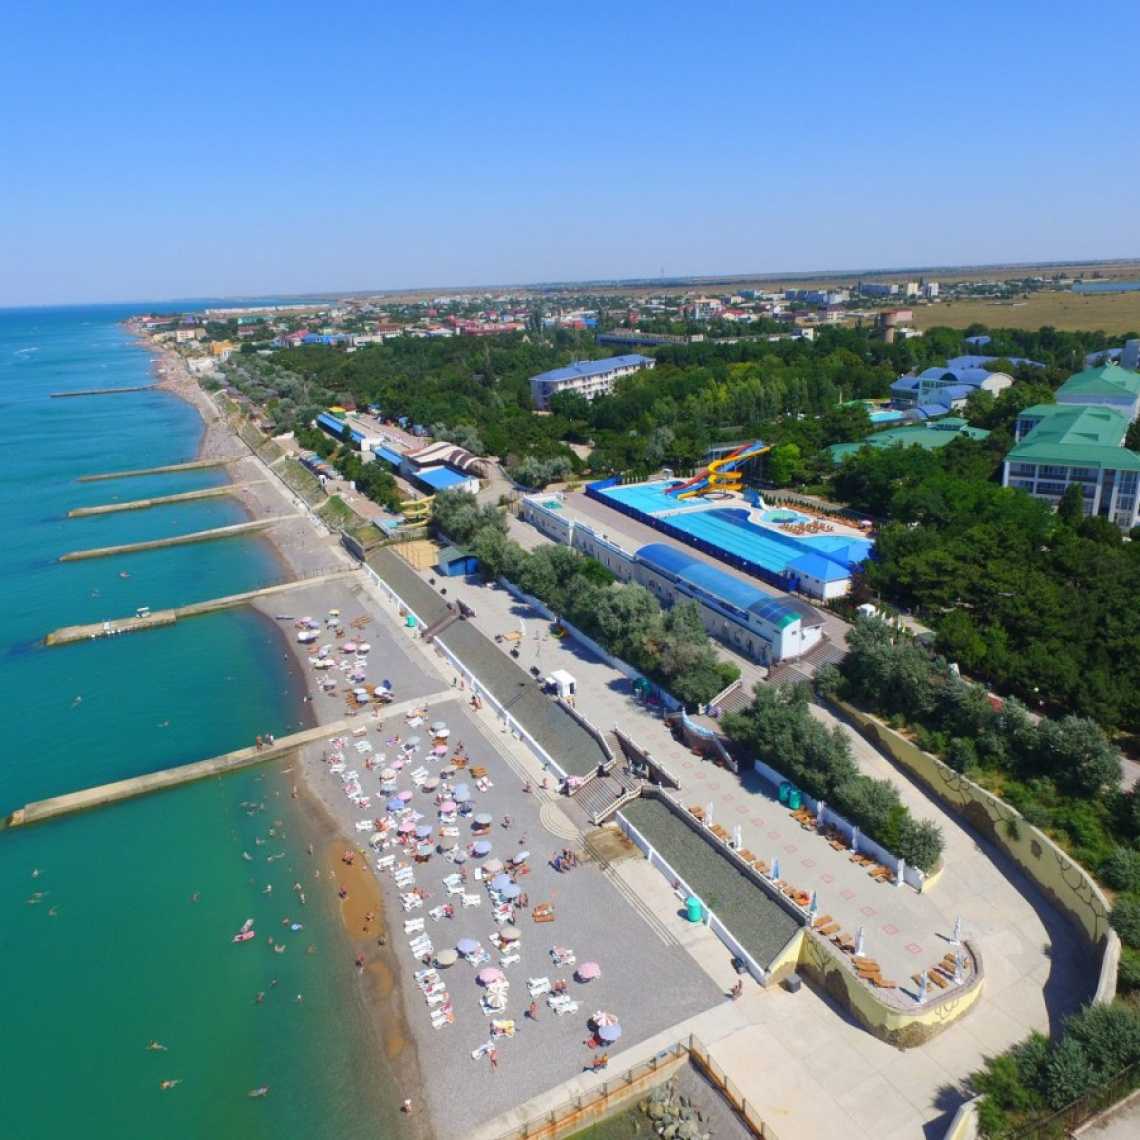 Курортный отель в николаевке в крыму: официальный сайт